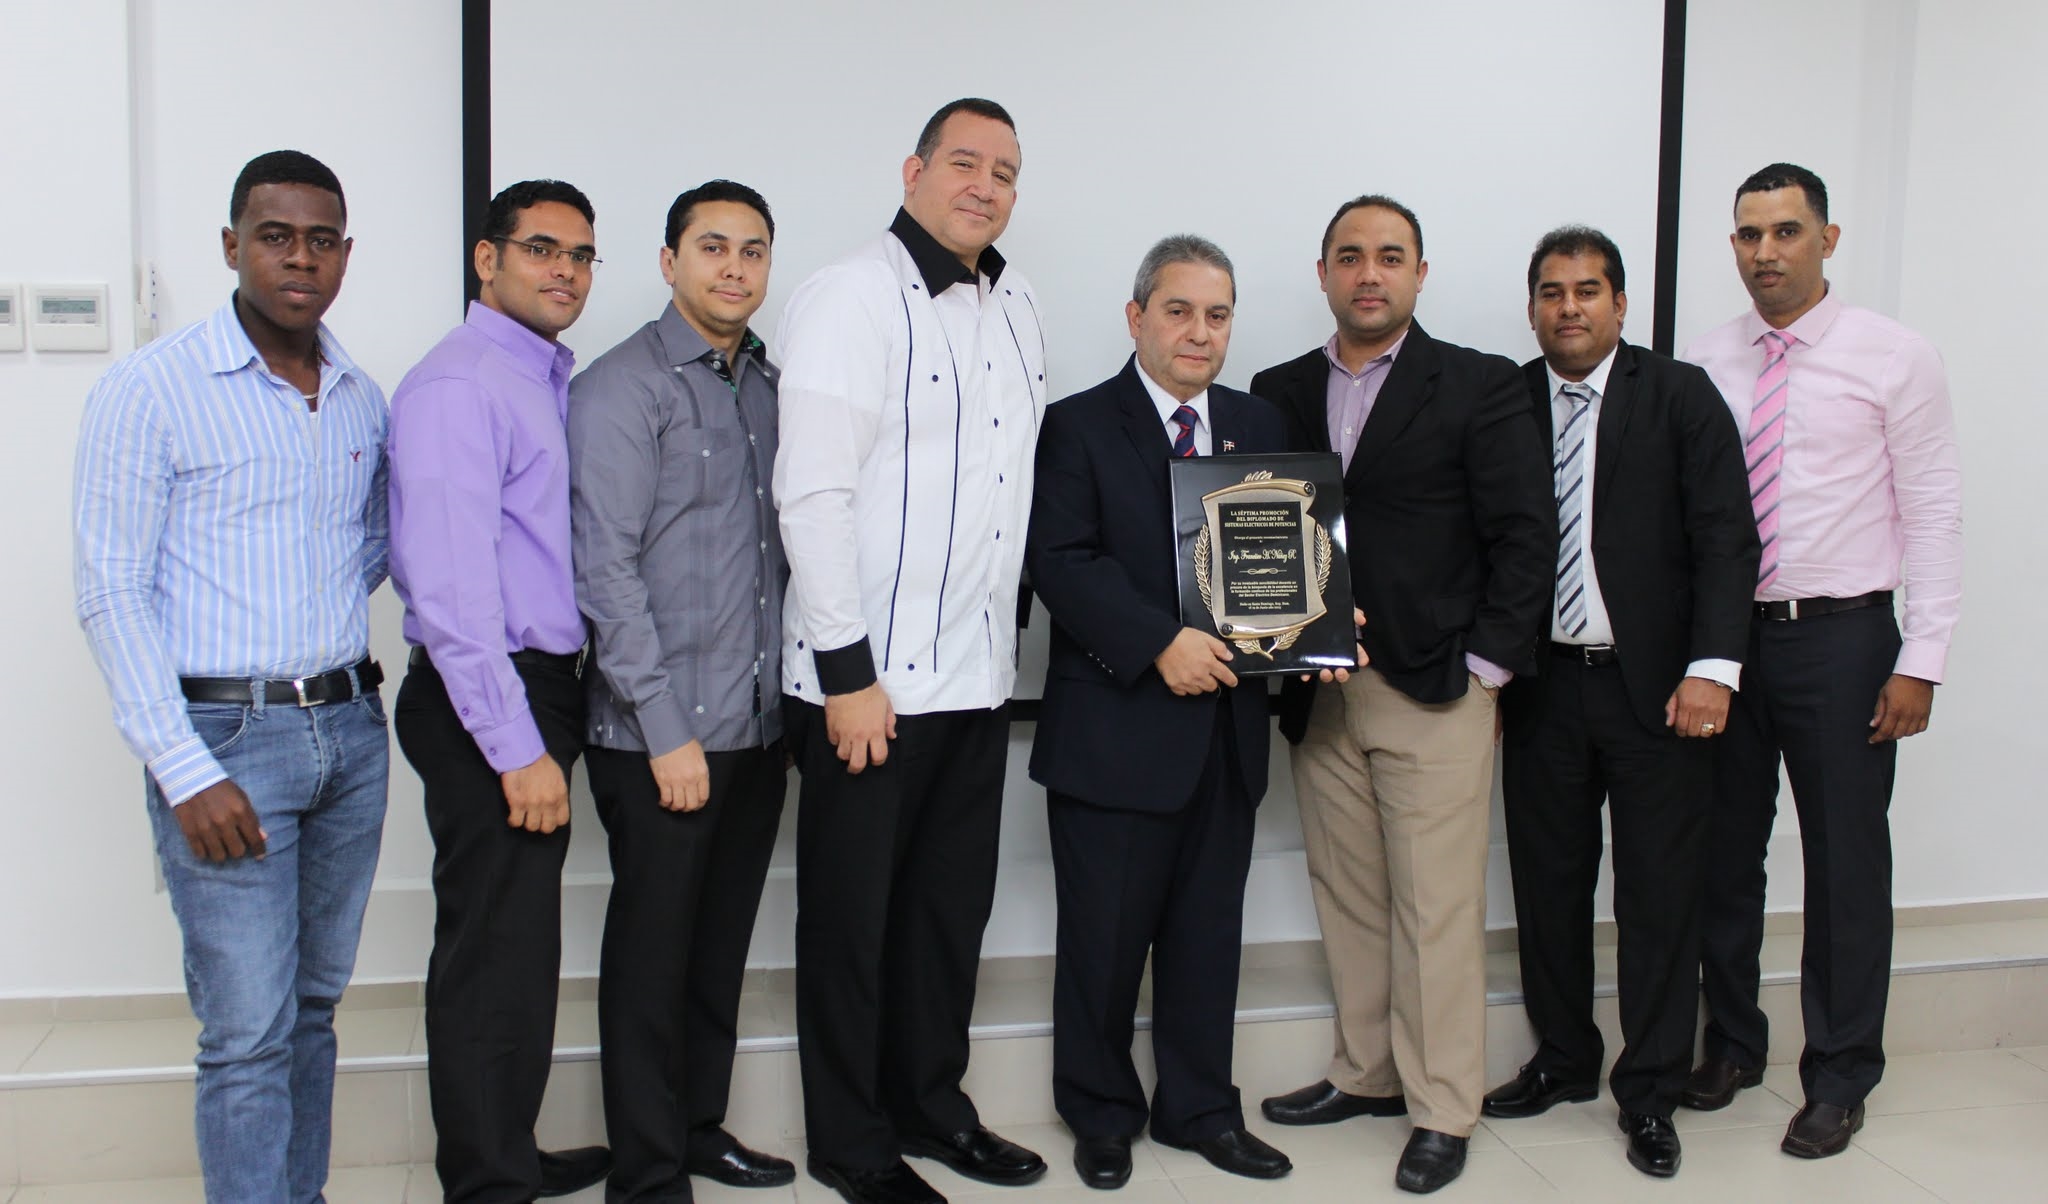 Los participantes hicieron entrega de un reconocimiento al ingeniero Frank Núñez Ramírez.